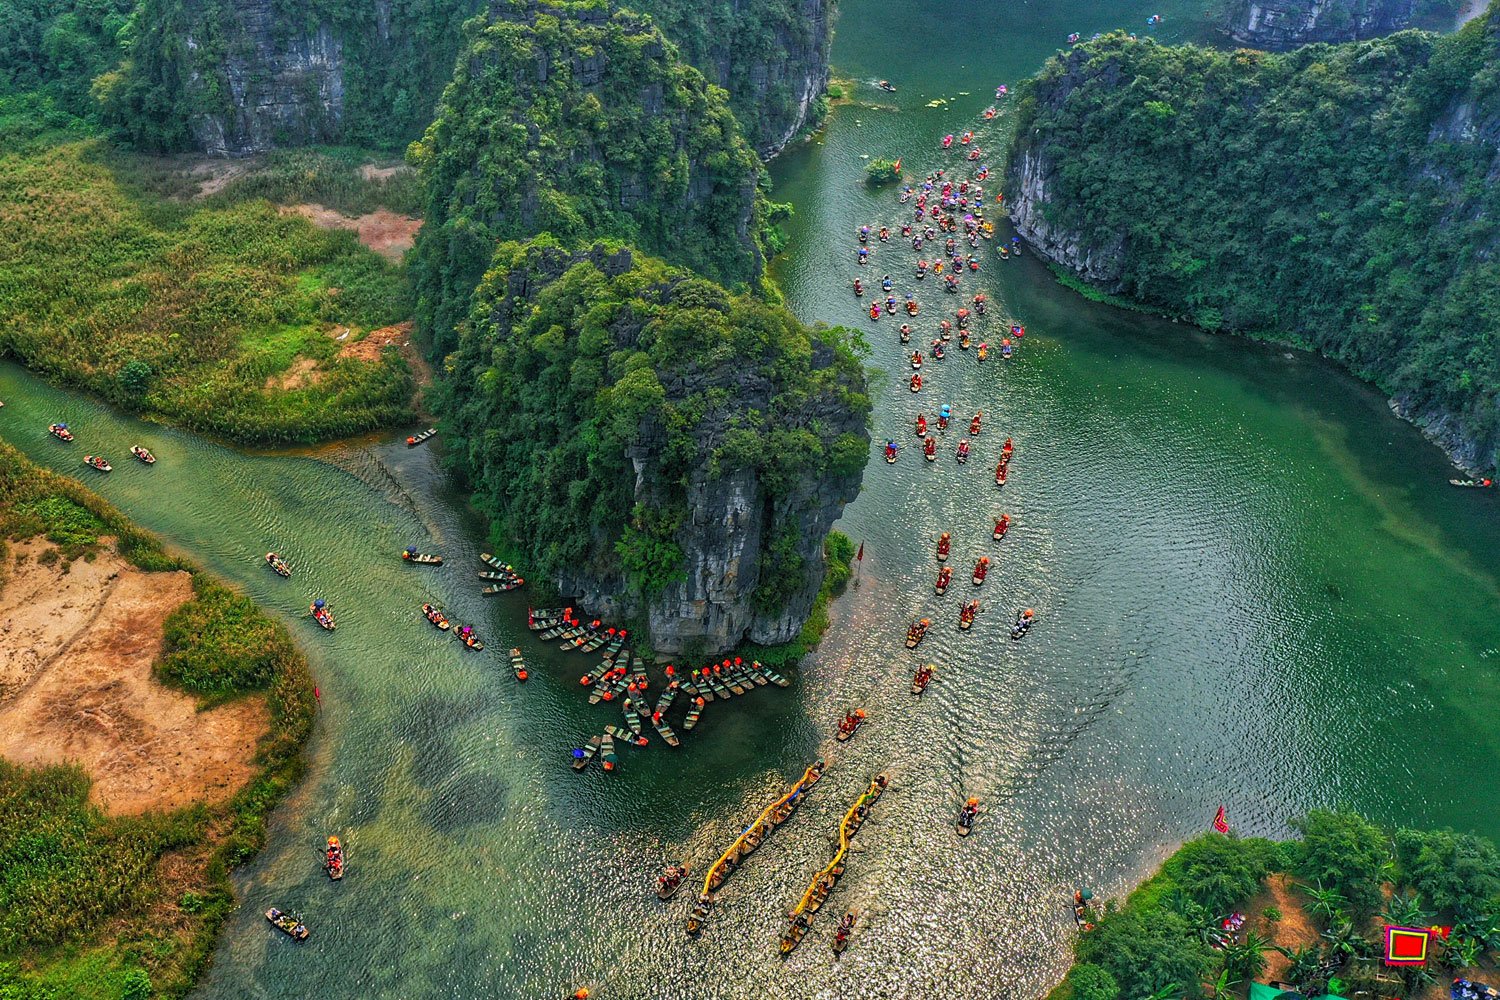 A local festival held at Trang An Resort (Ninh Binh)